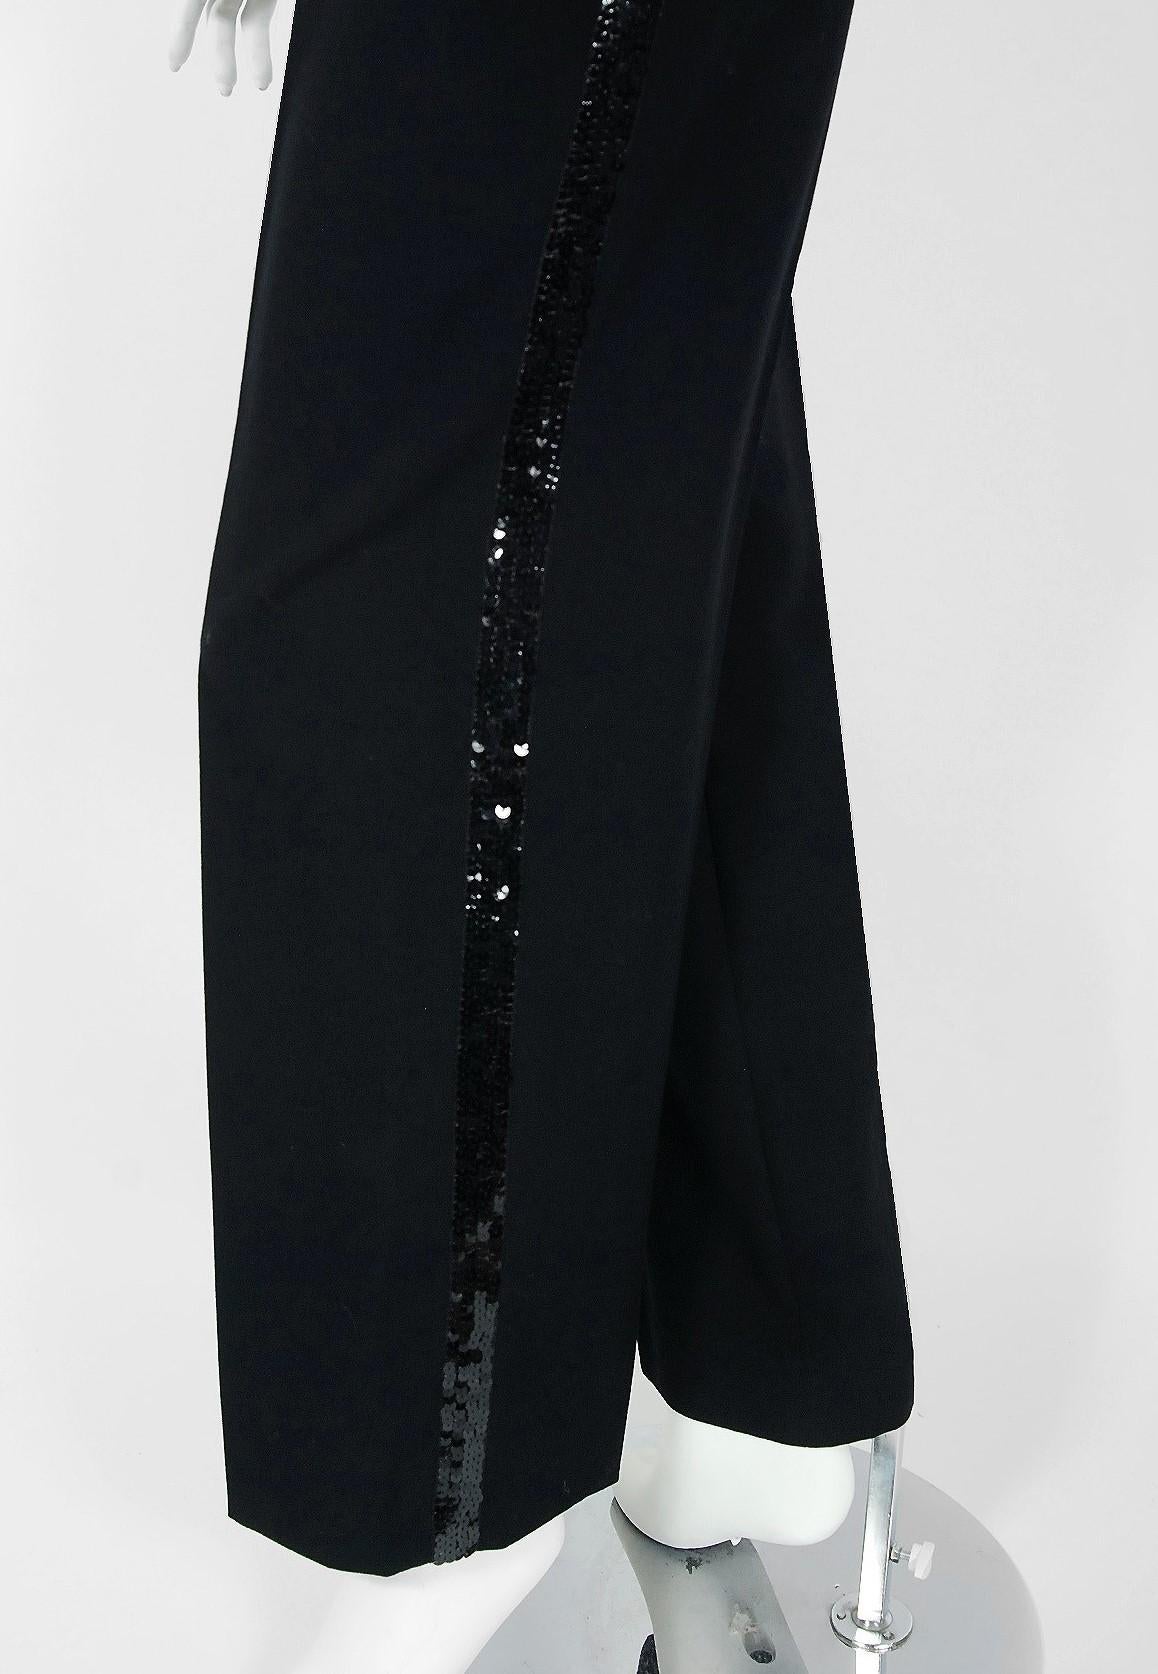 Vintage 1974 Yves Saint Laurent Sequin Black Wool Jumper Le Smoking Trousers Suit For Sale 2